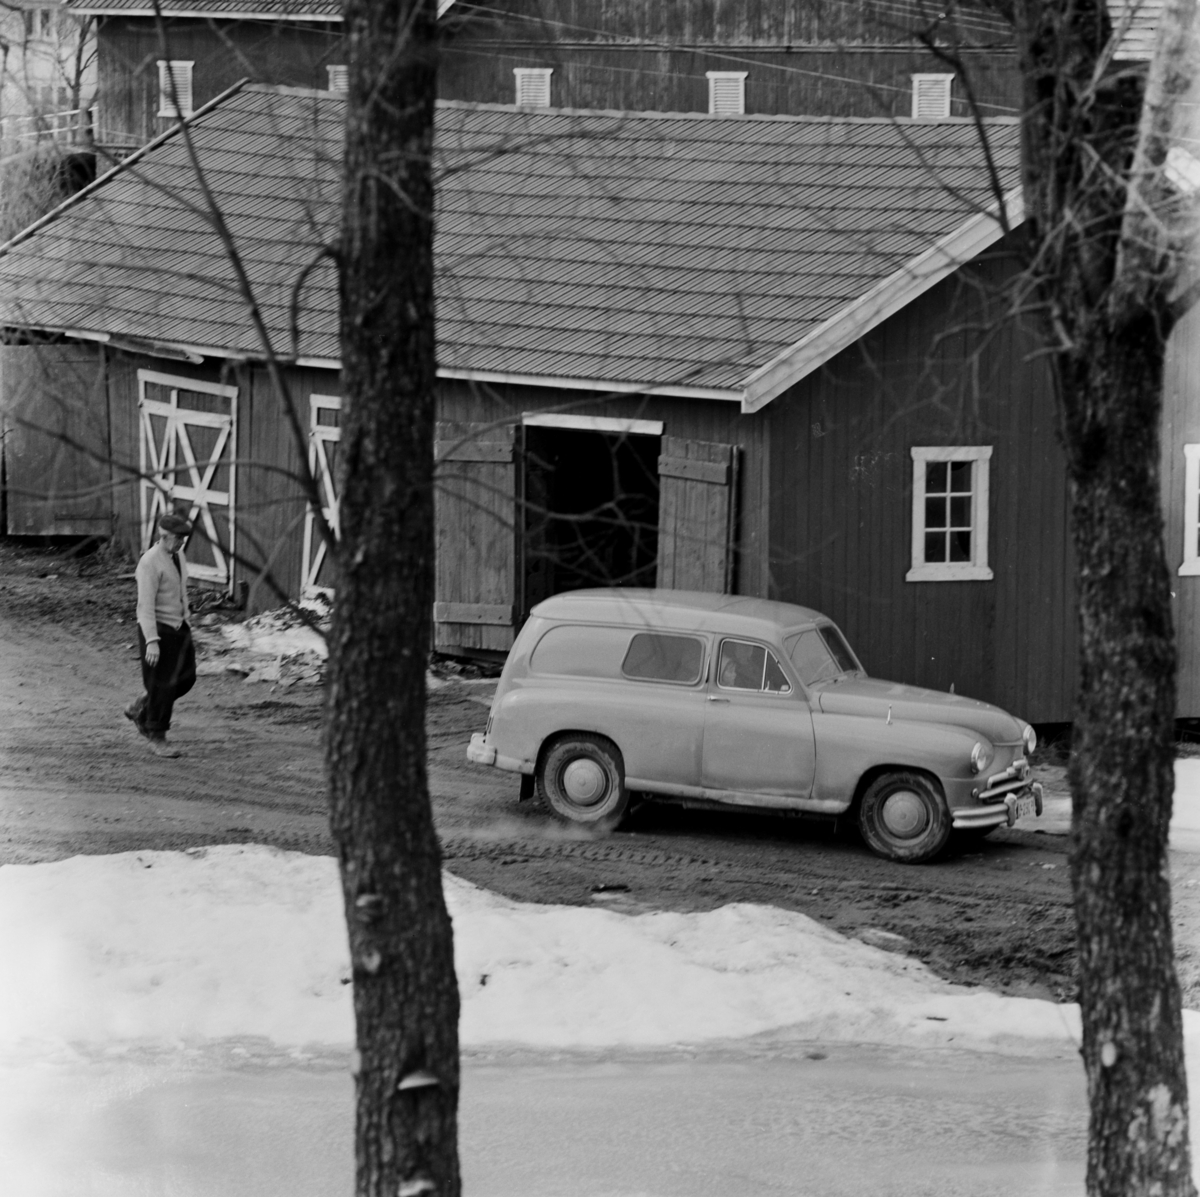 Bil på tunet, Sørum gård. Standard Vanguard varebil fra 1950 tallet.